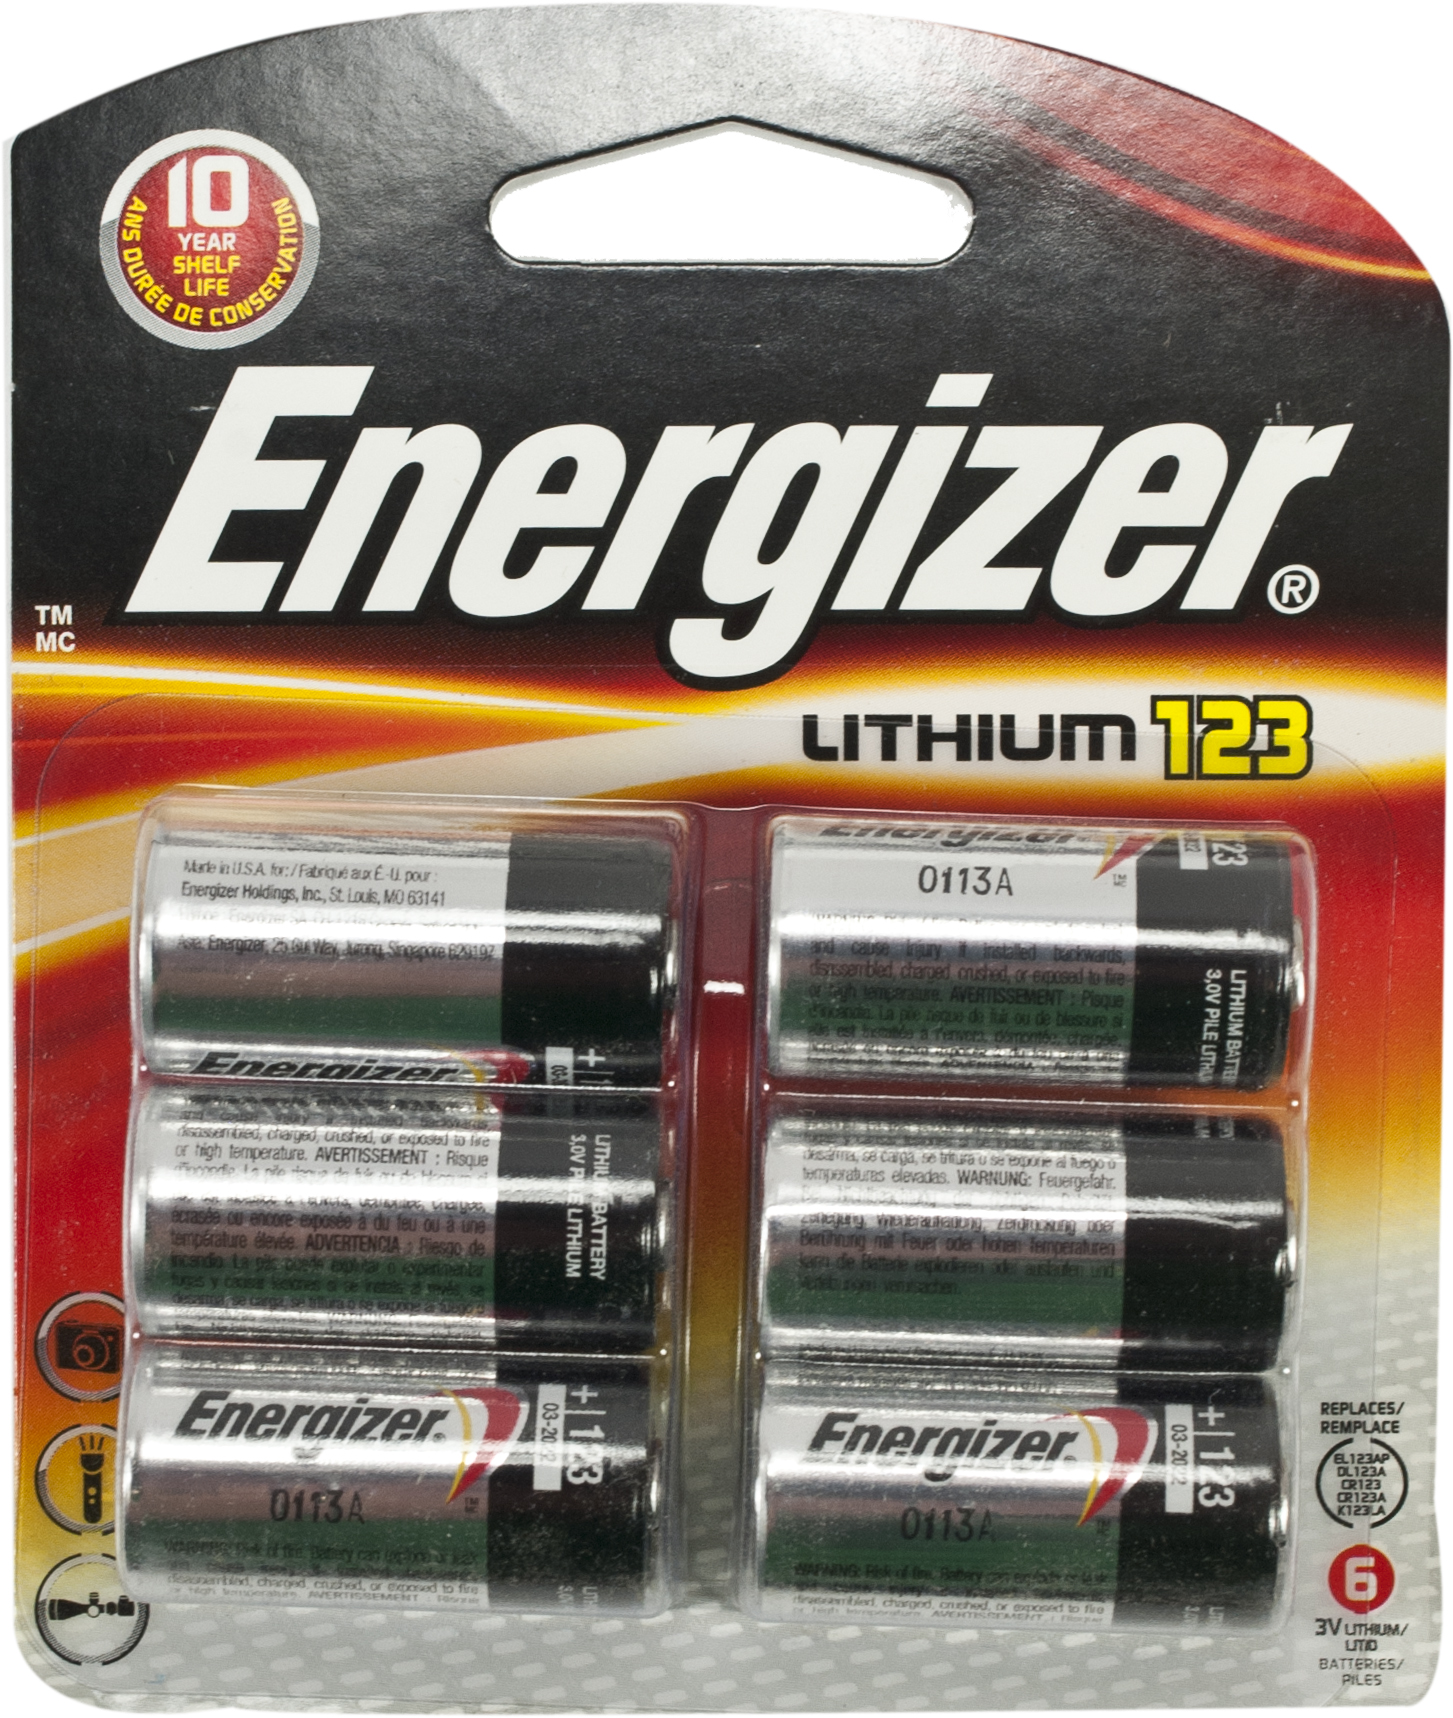 Energizer 3V Lithium 123 Photo Battery